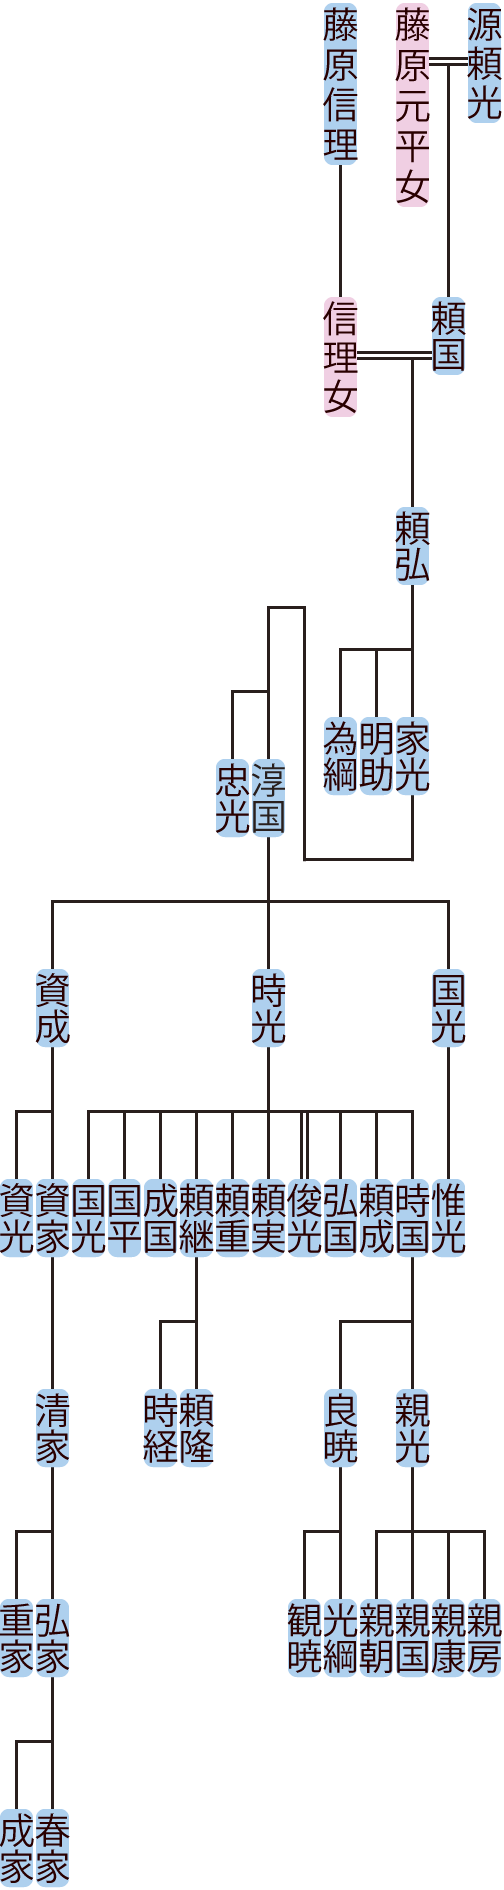 源頼弘の系図